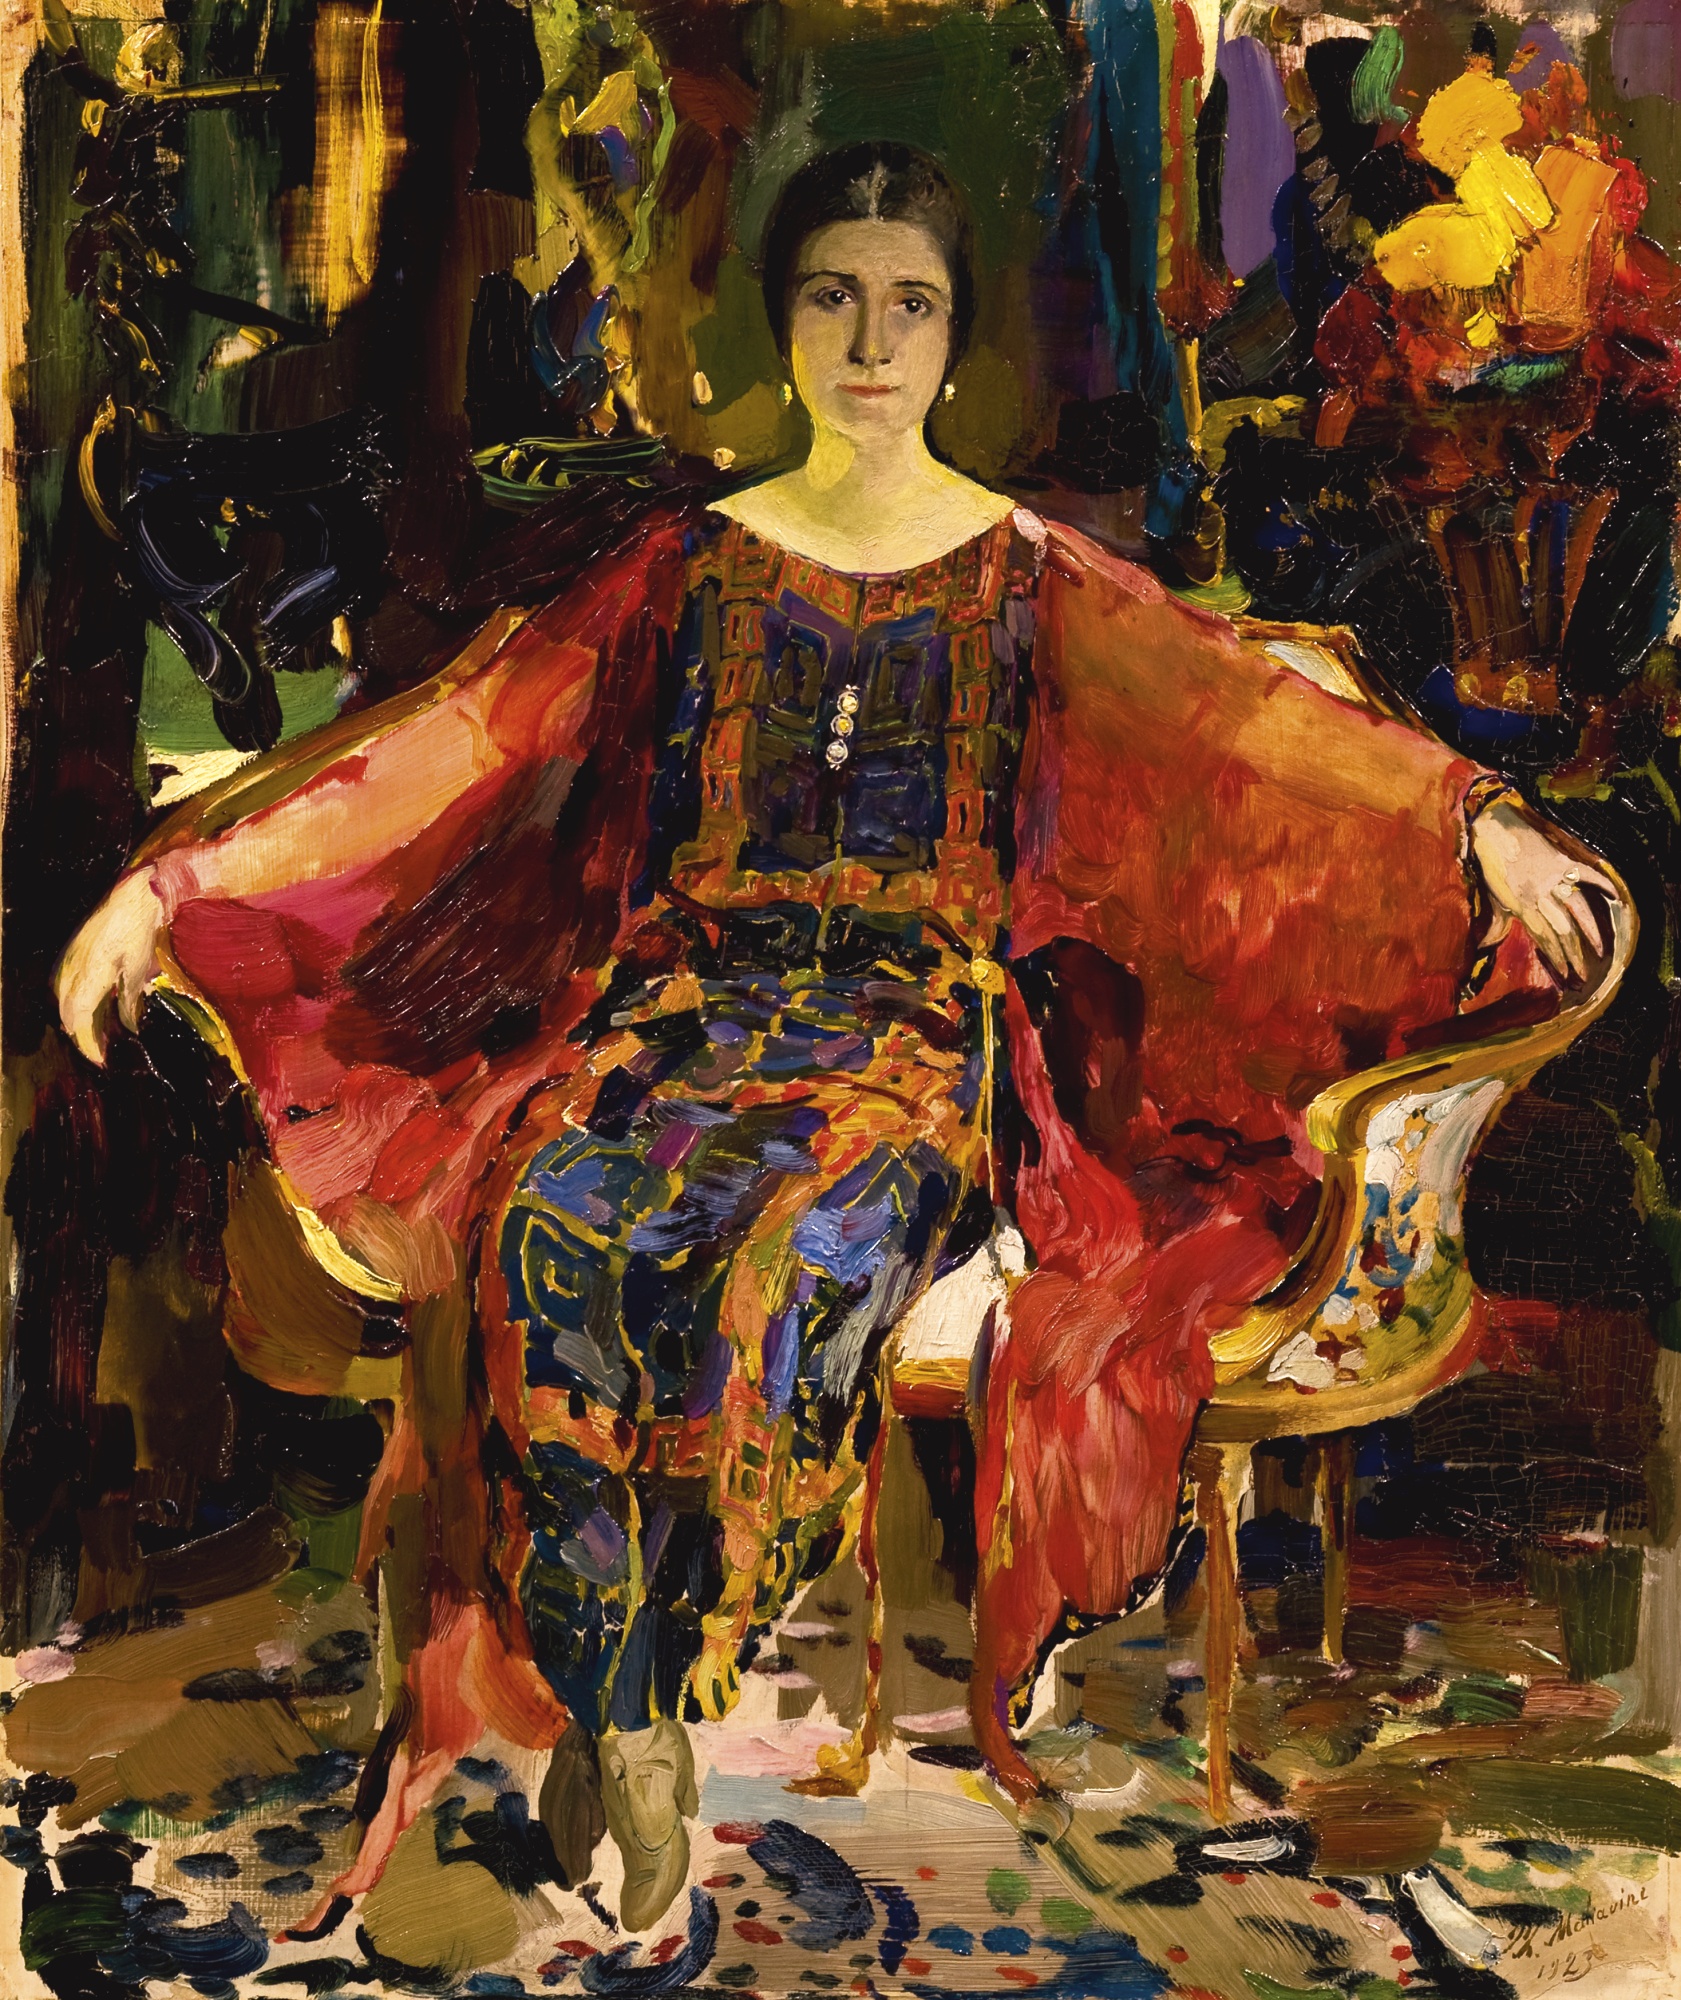 Малявин. Портрет балерины Александры Балашовой. 1923